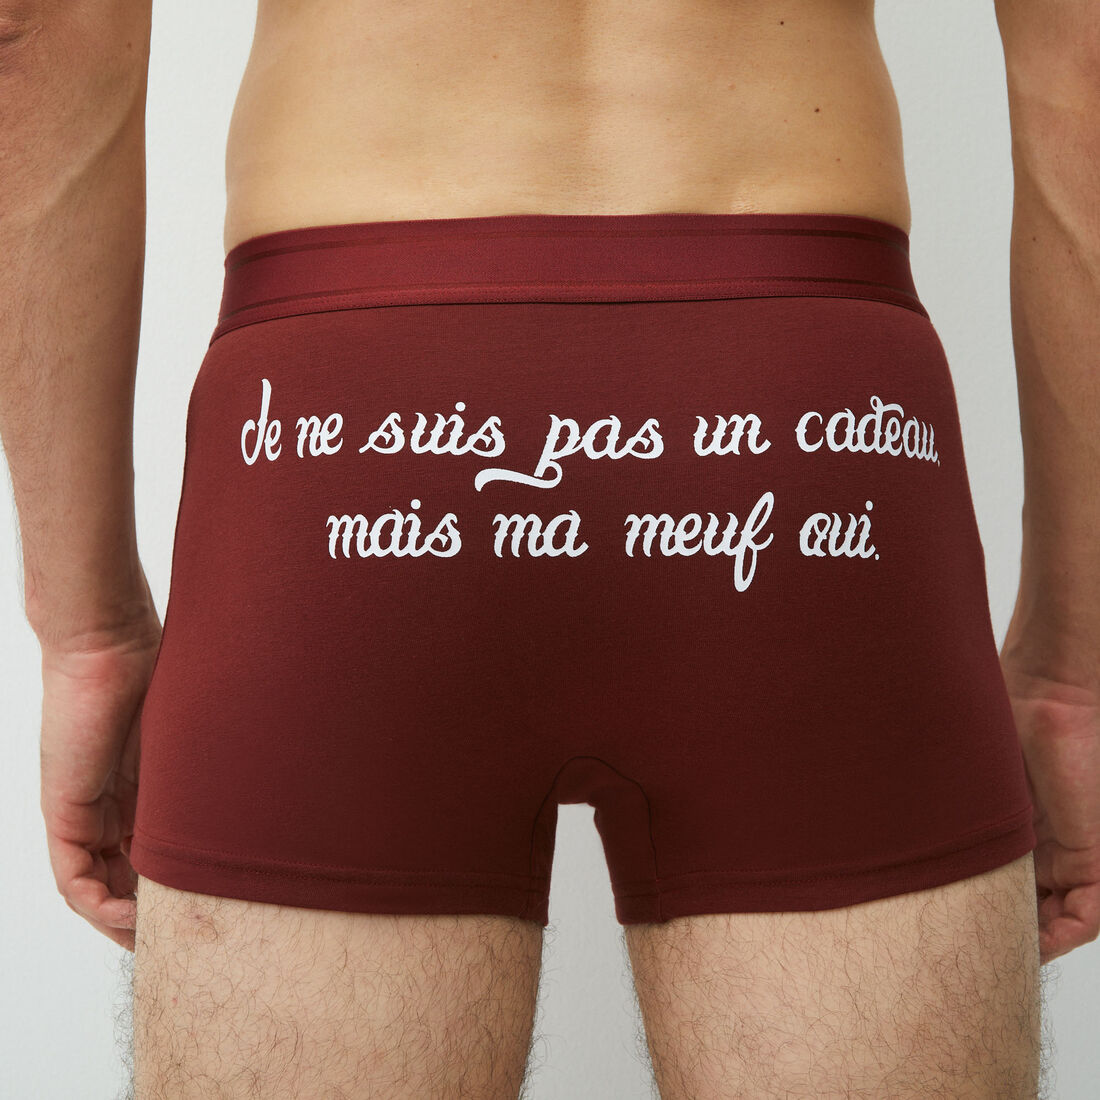 boxers with "je ne suis pas un cadeau mais ma meuf oui" slogan ;